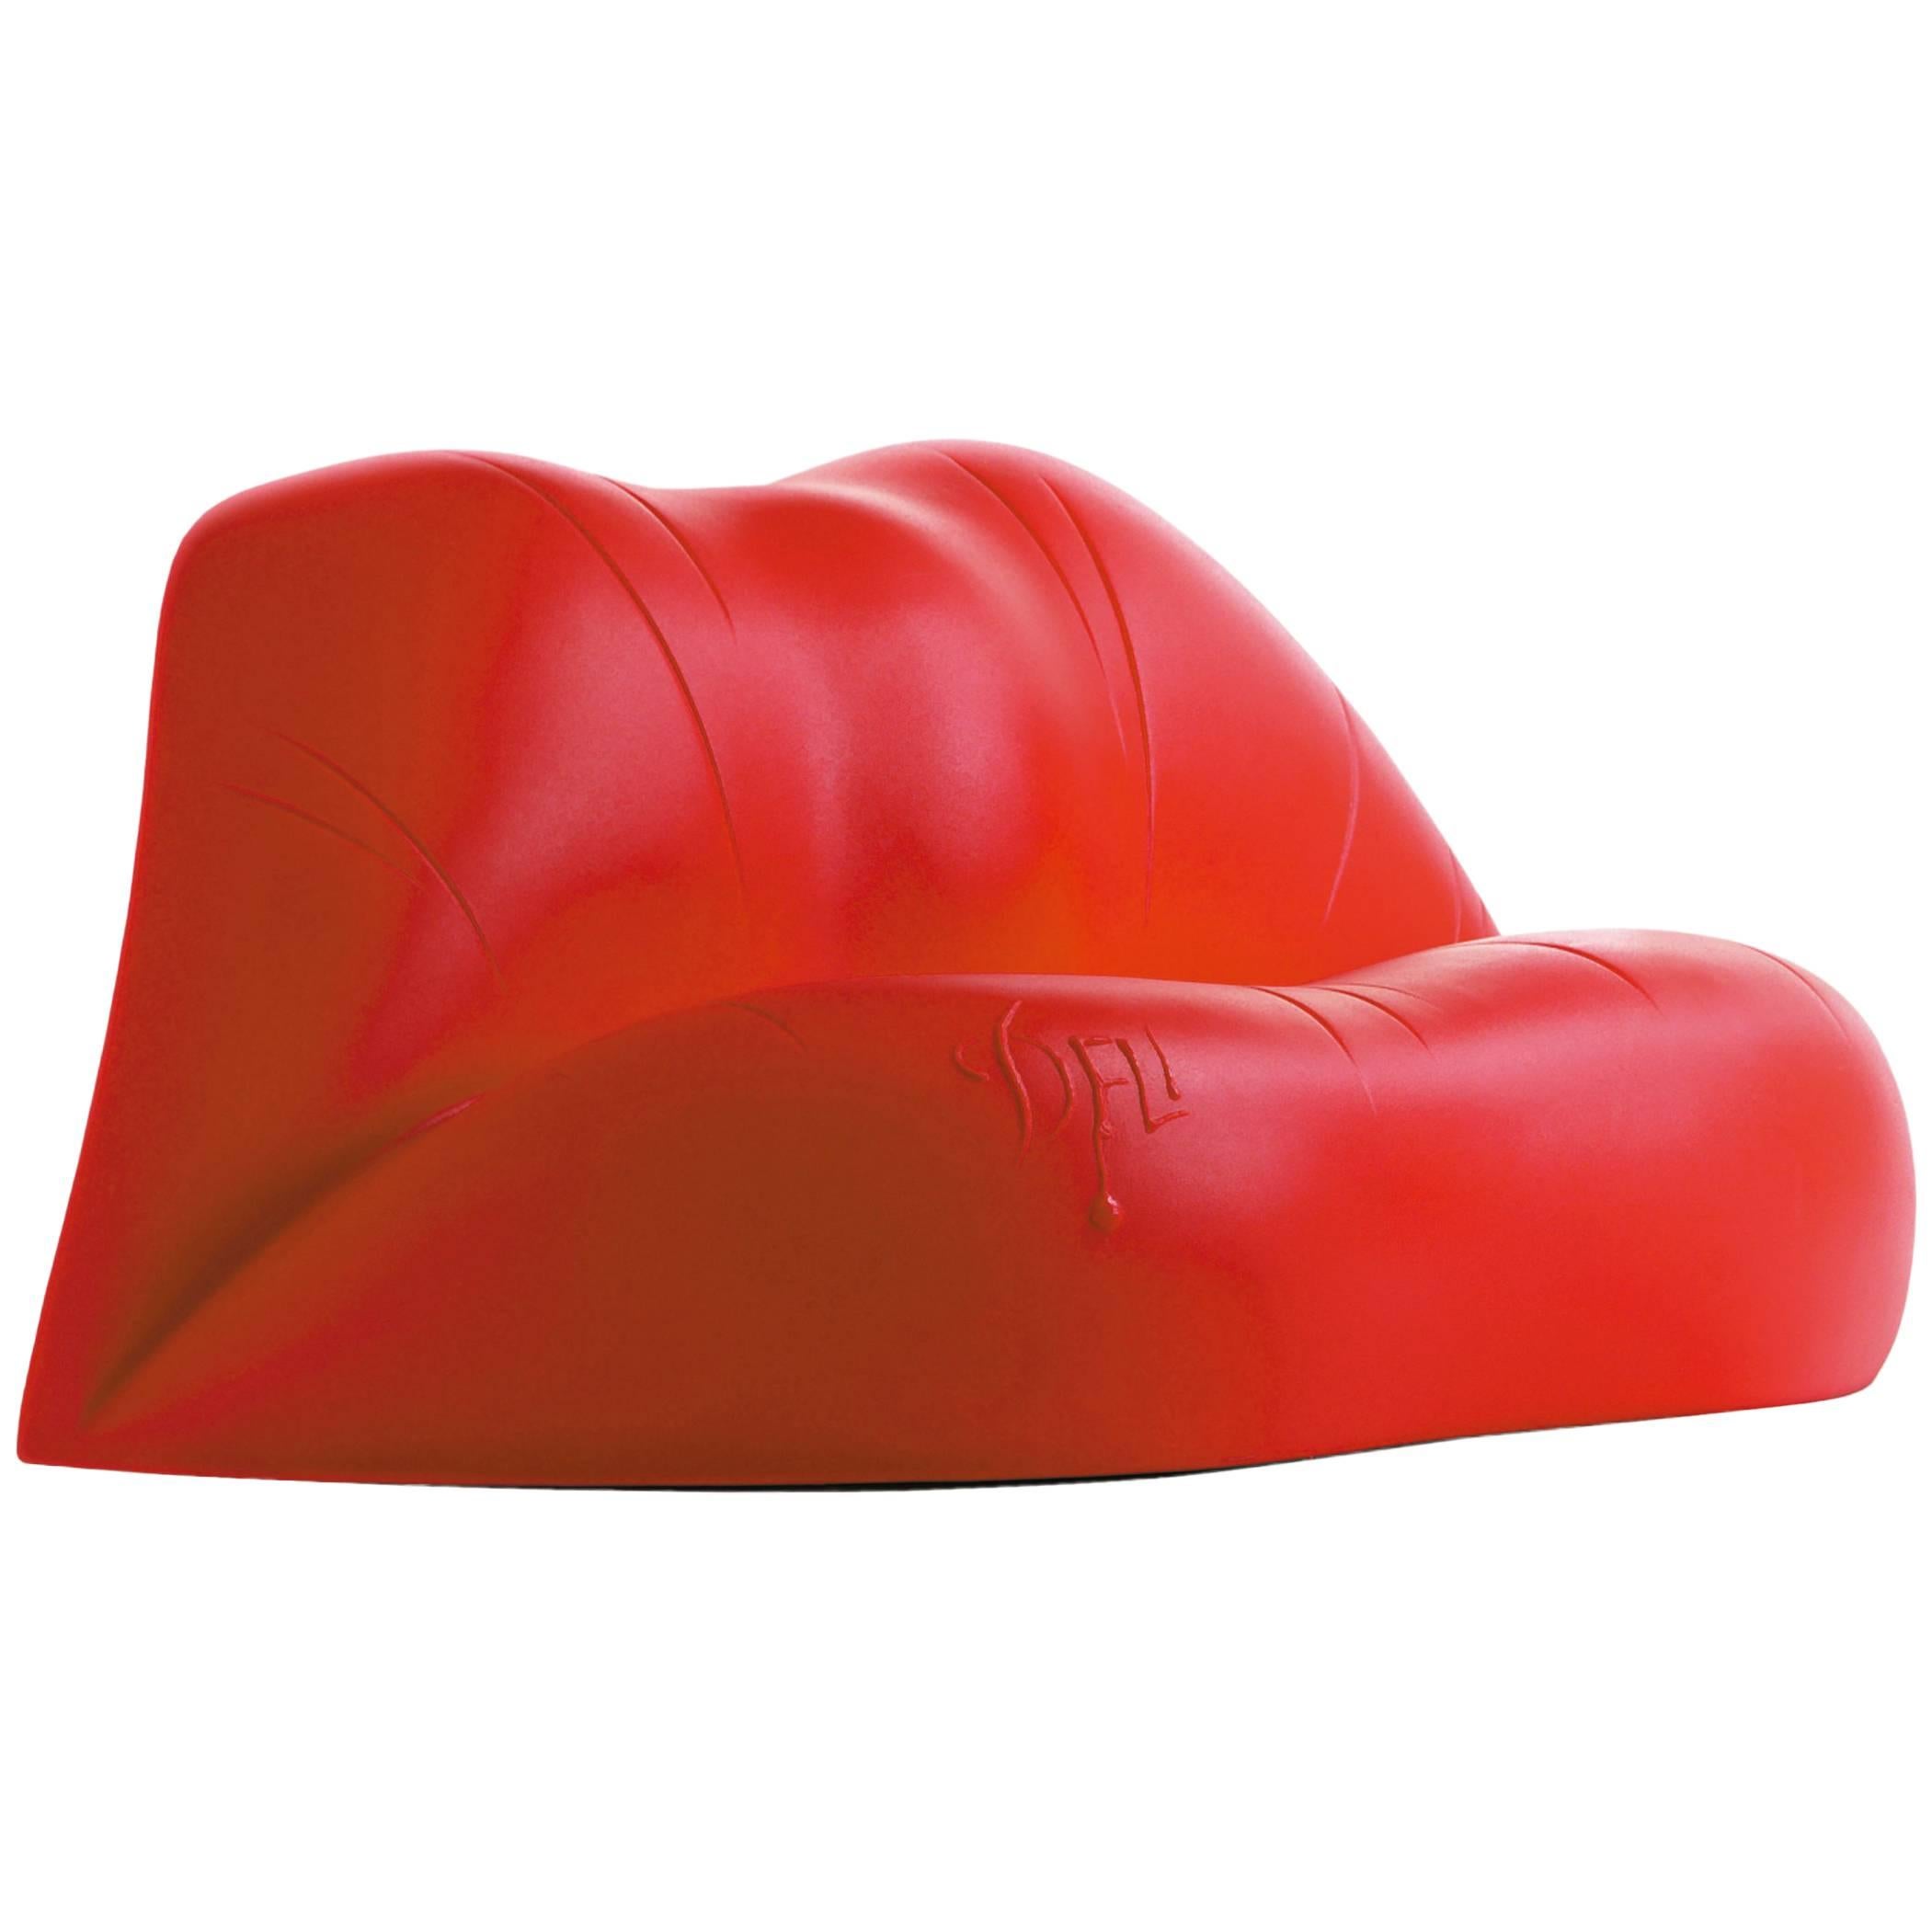 Dalilips, entworfen von Salvador Dali für BD Design.

Zweisitziges Sofa aus Polyethylen im Rotationsgussverfahren hergestellt. Farbe Rot.

Maße: 100 x 170 x 73 H cm.

Es handelt sich um das berühmte Sofa in Form eines Mundes, das der Künstler 1972